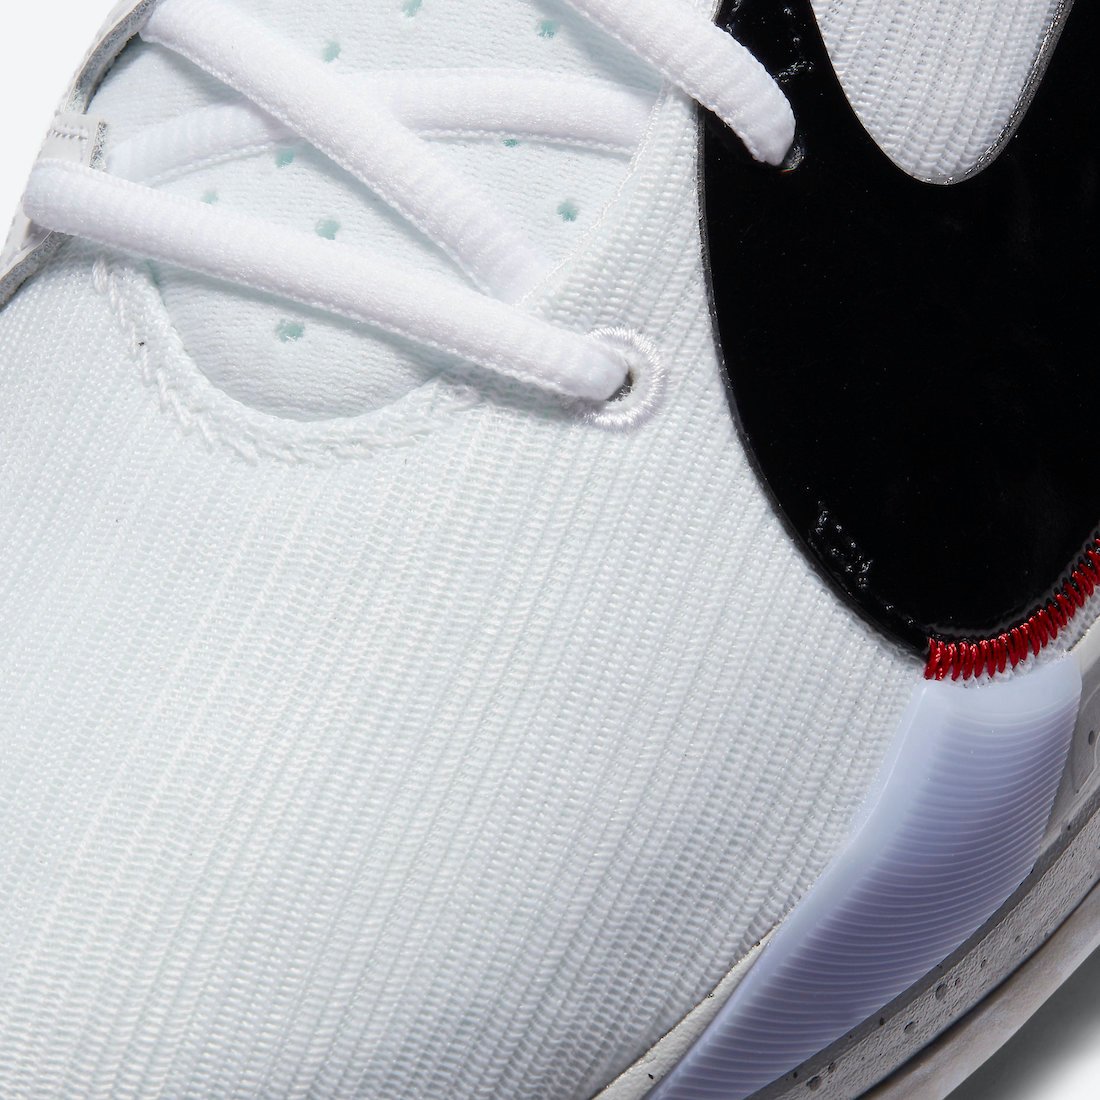 Nike Zoom Freak 2 White Cement CK5825-100 Release Date